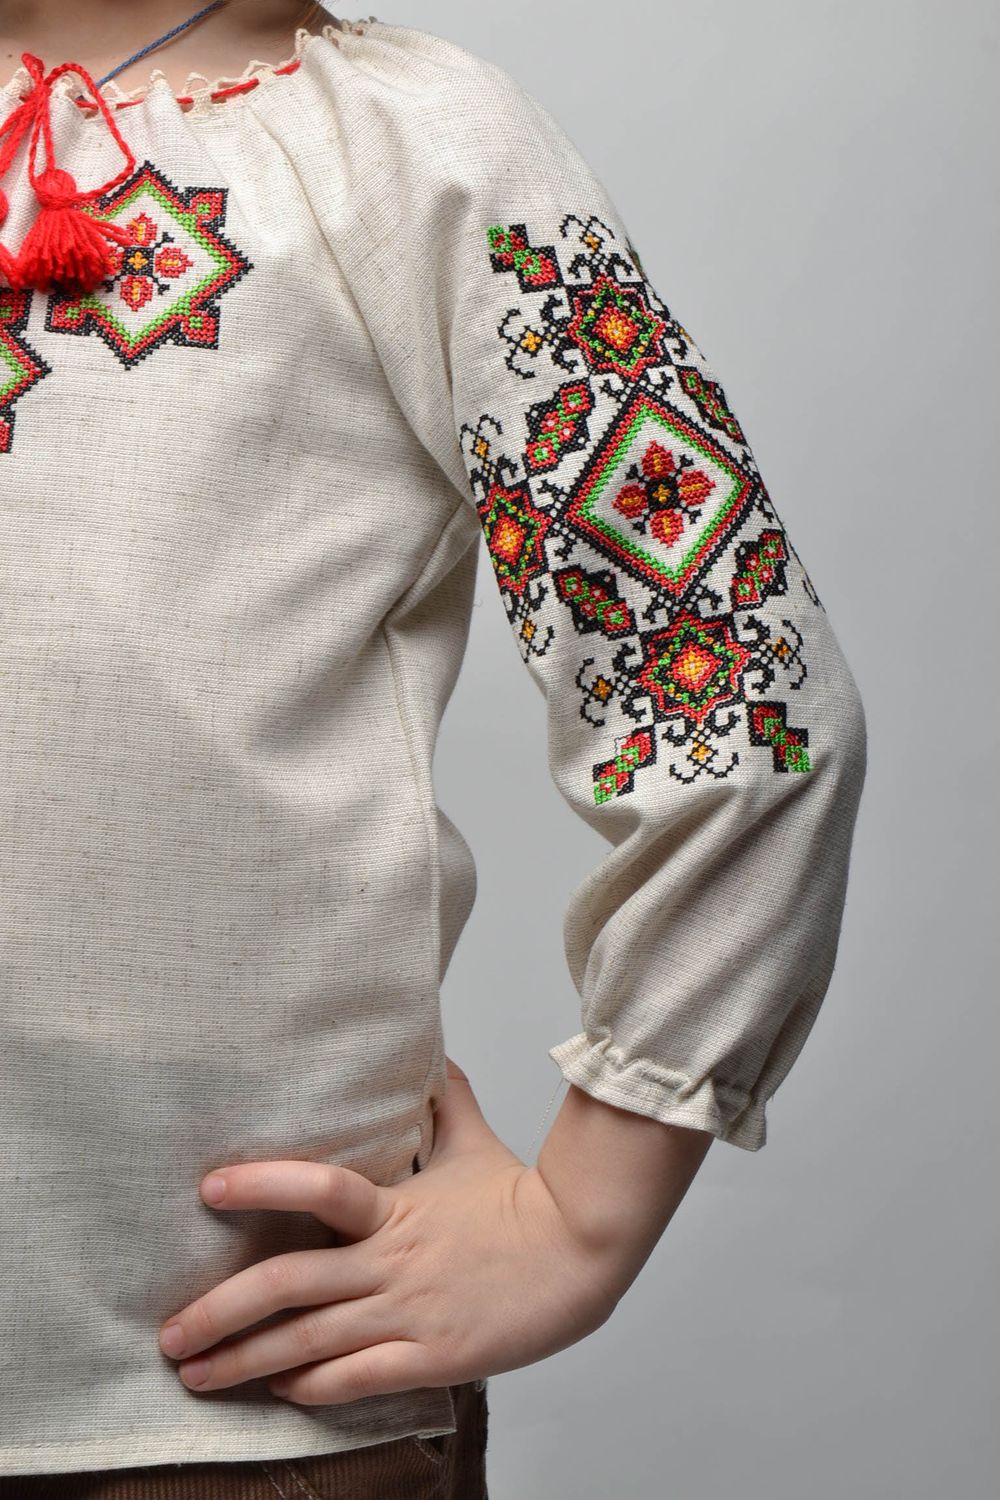 Camisa étnica bordada de manga larga para niña de 5-7 años de edad foto 2